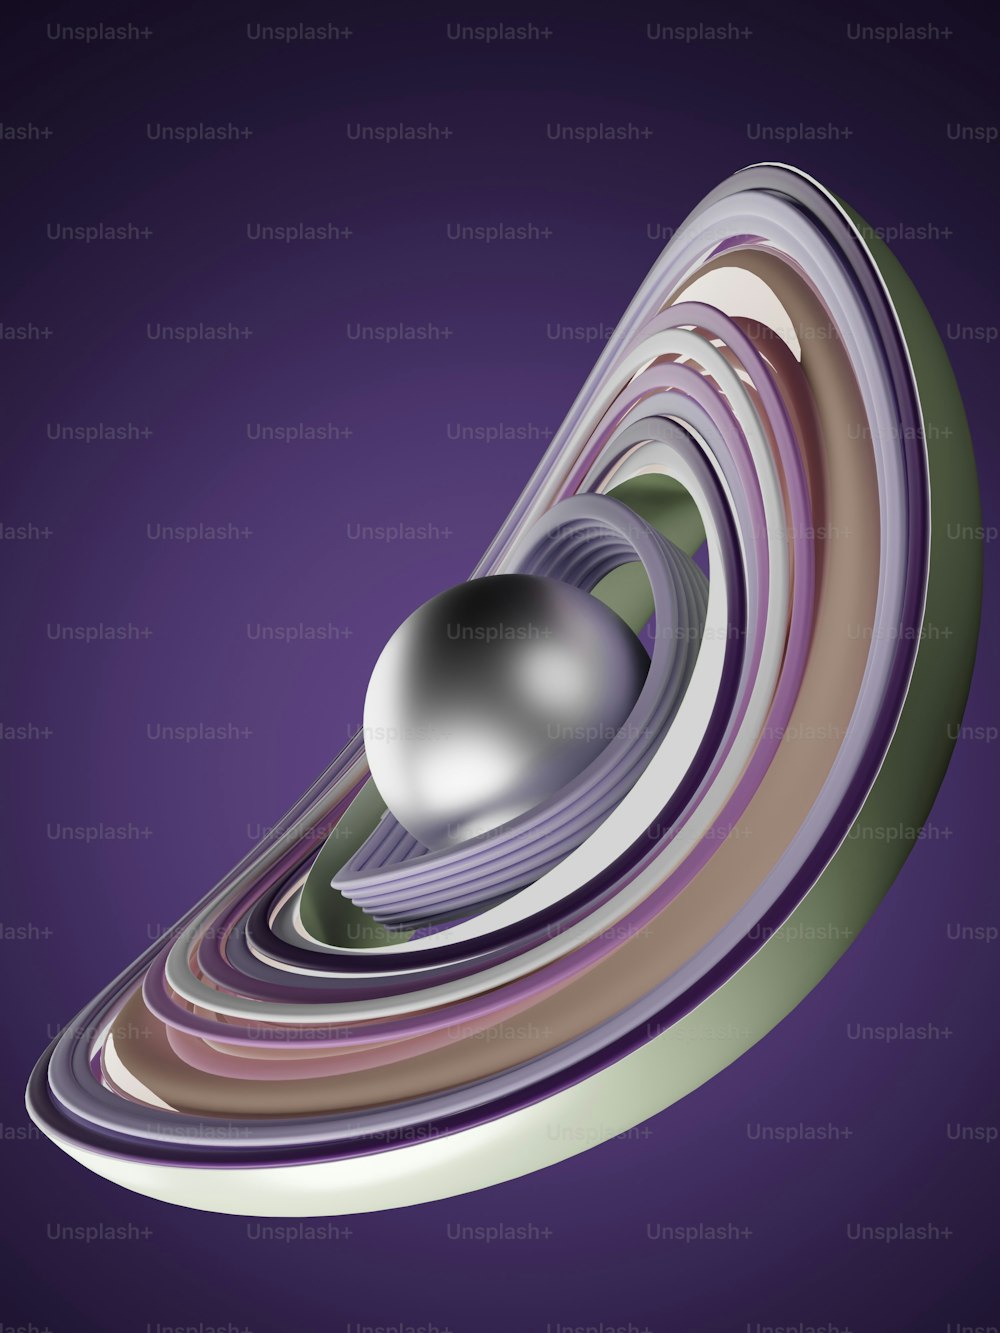 uma imagem gerada por computador de uma esfera